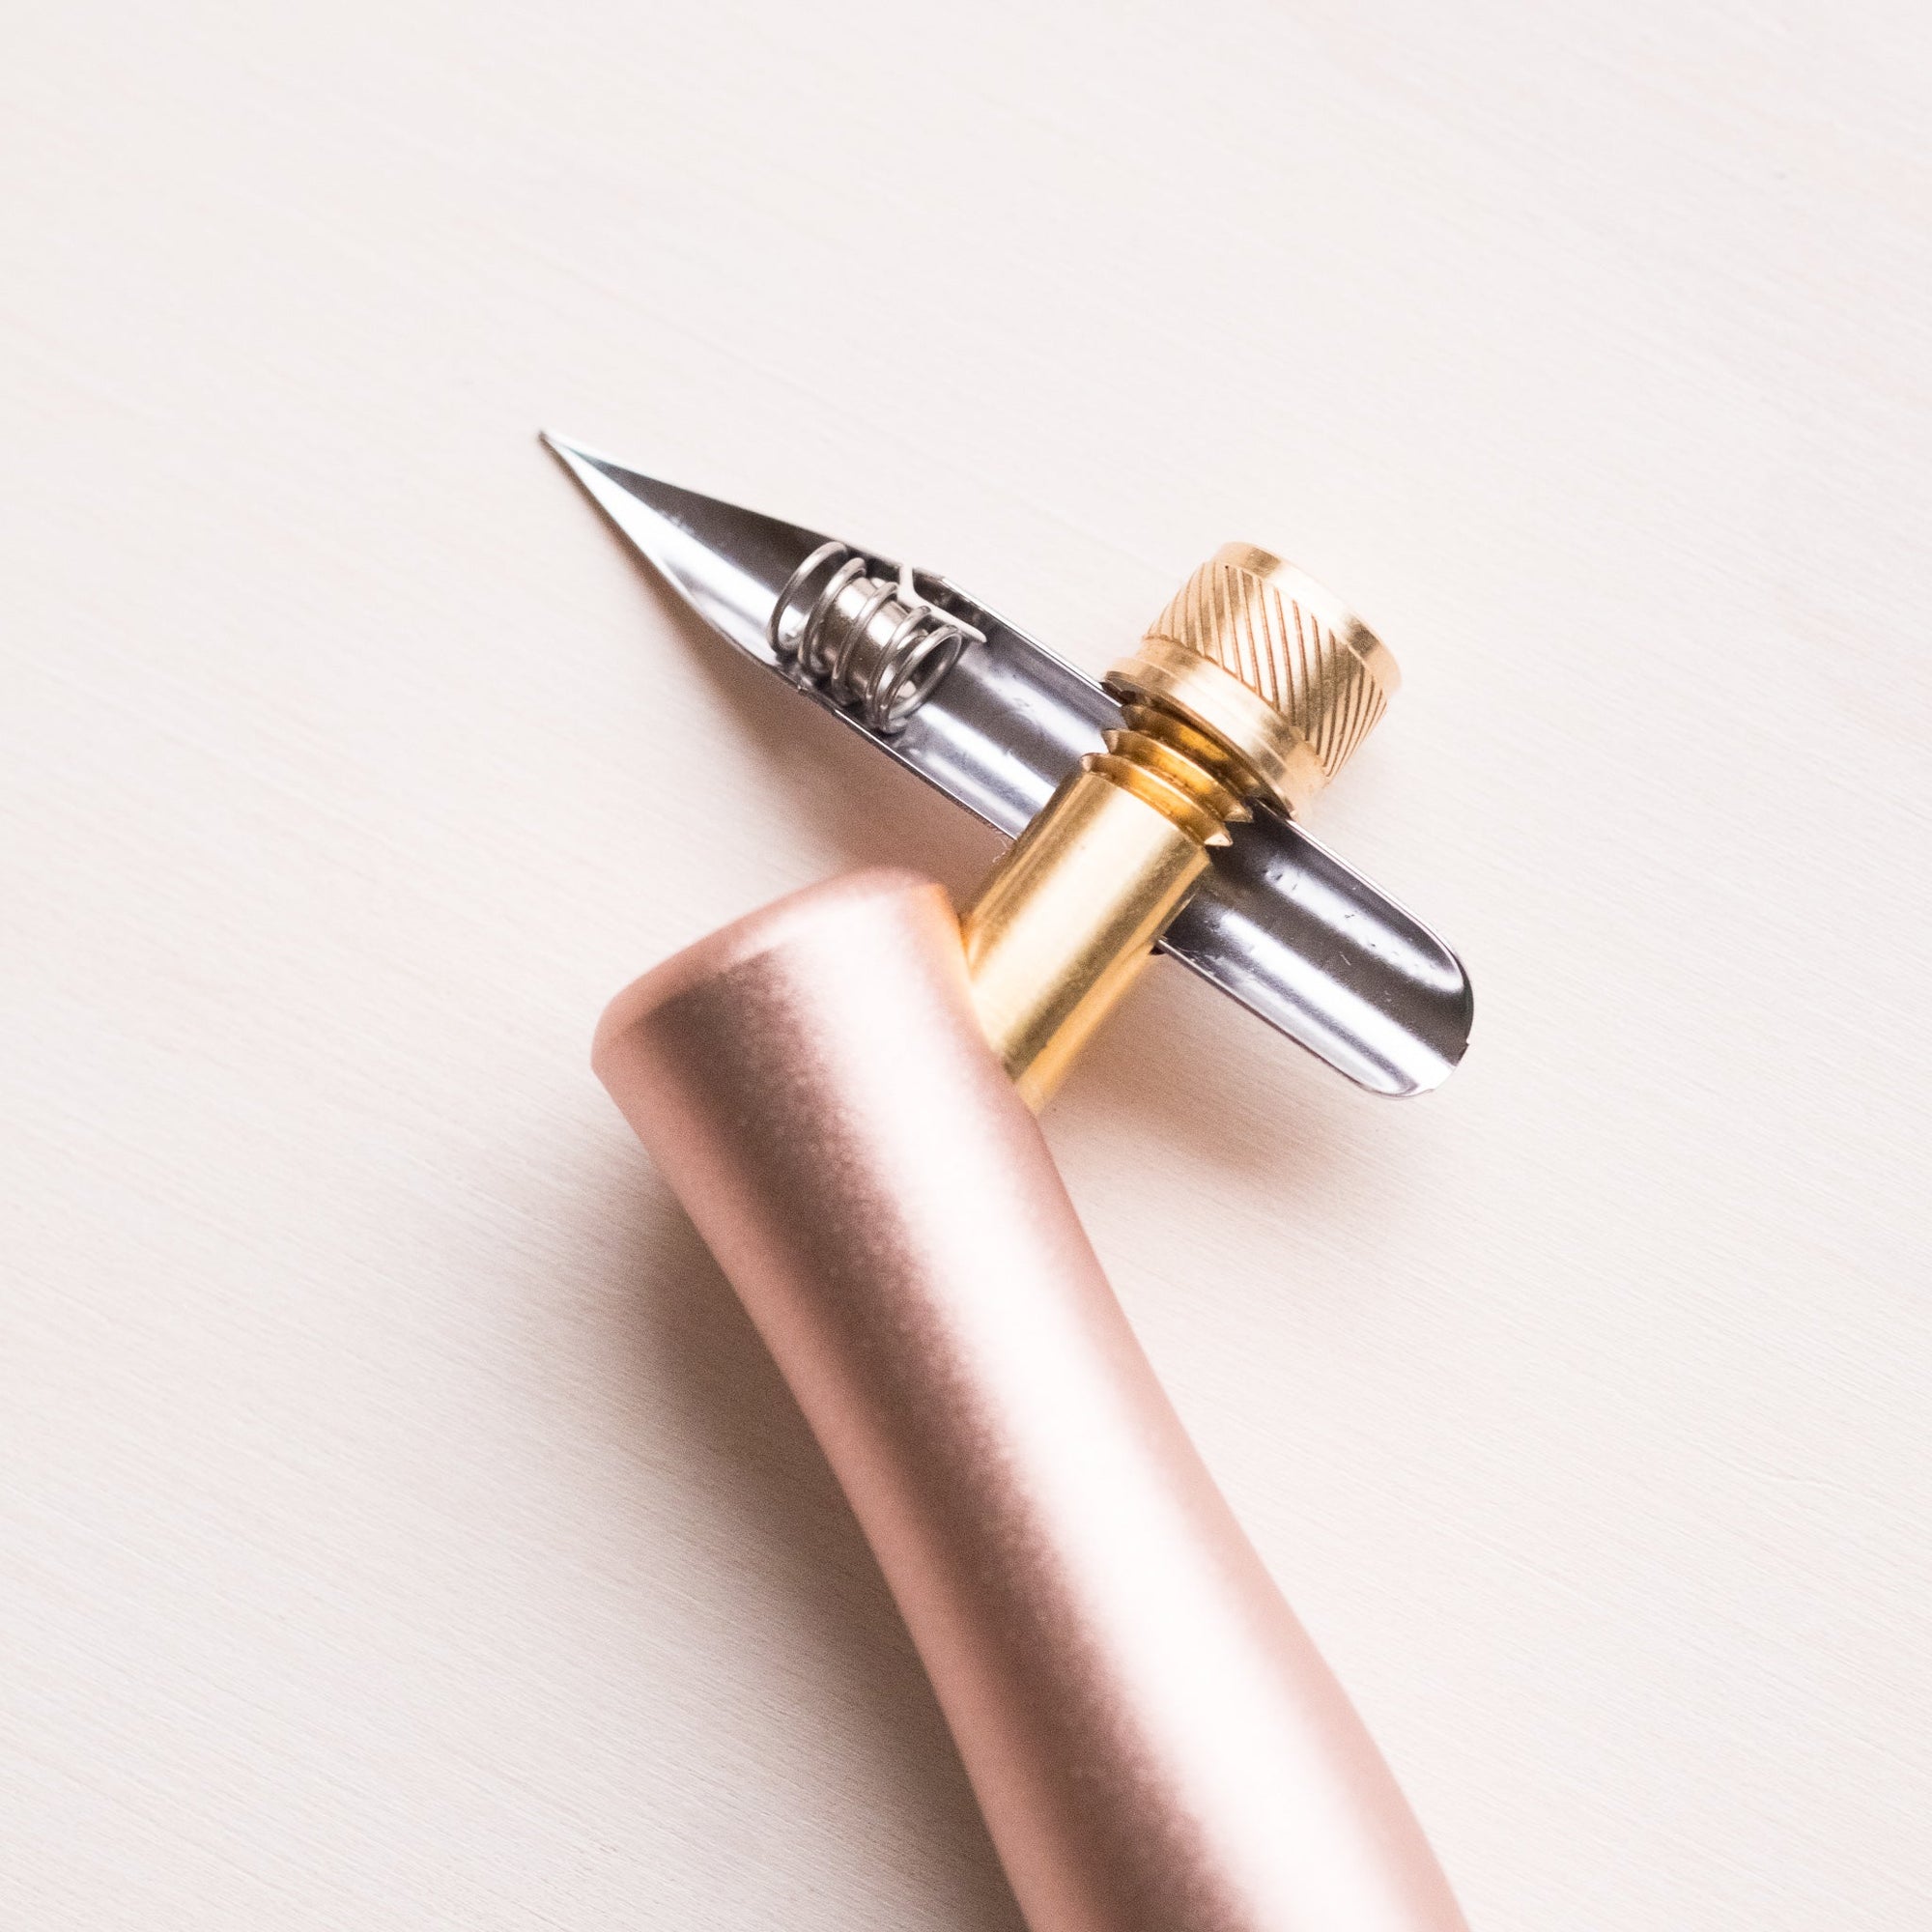 Tachikawa Pen Nib Holder(T-40) + Nikko G Pen Nib Pack of 10